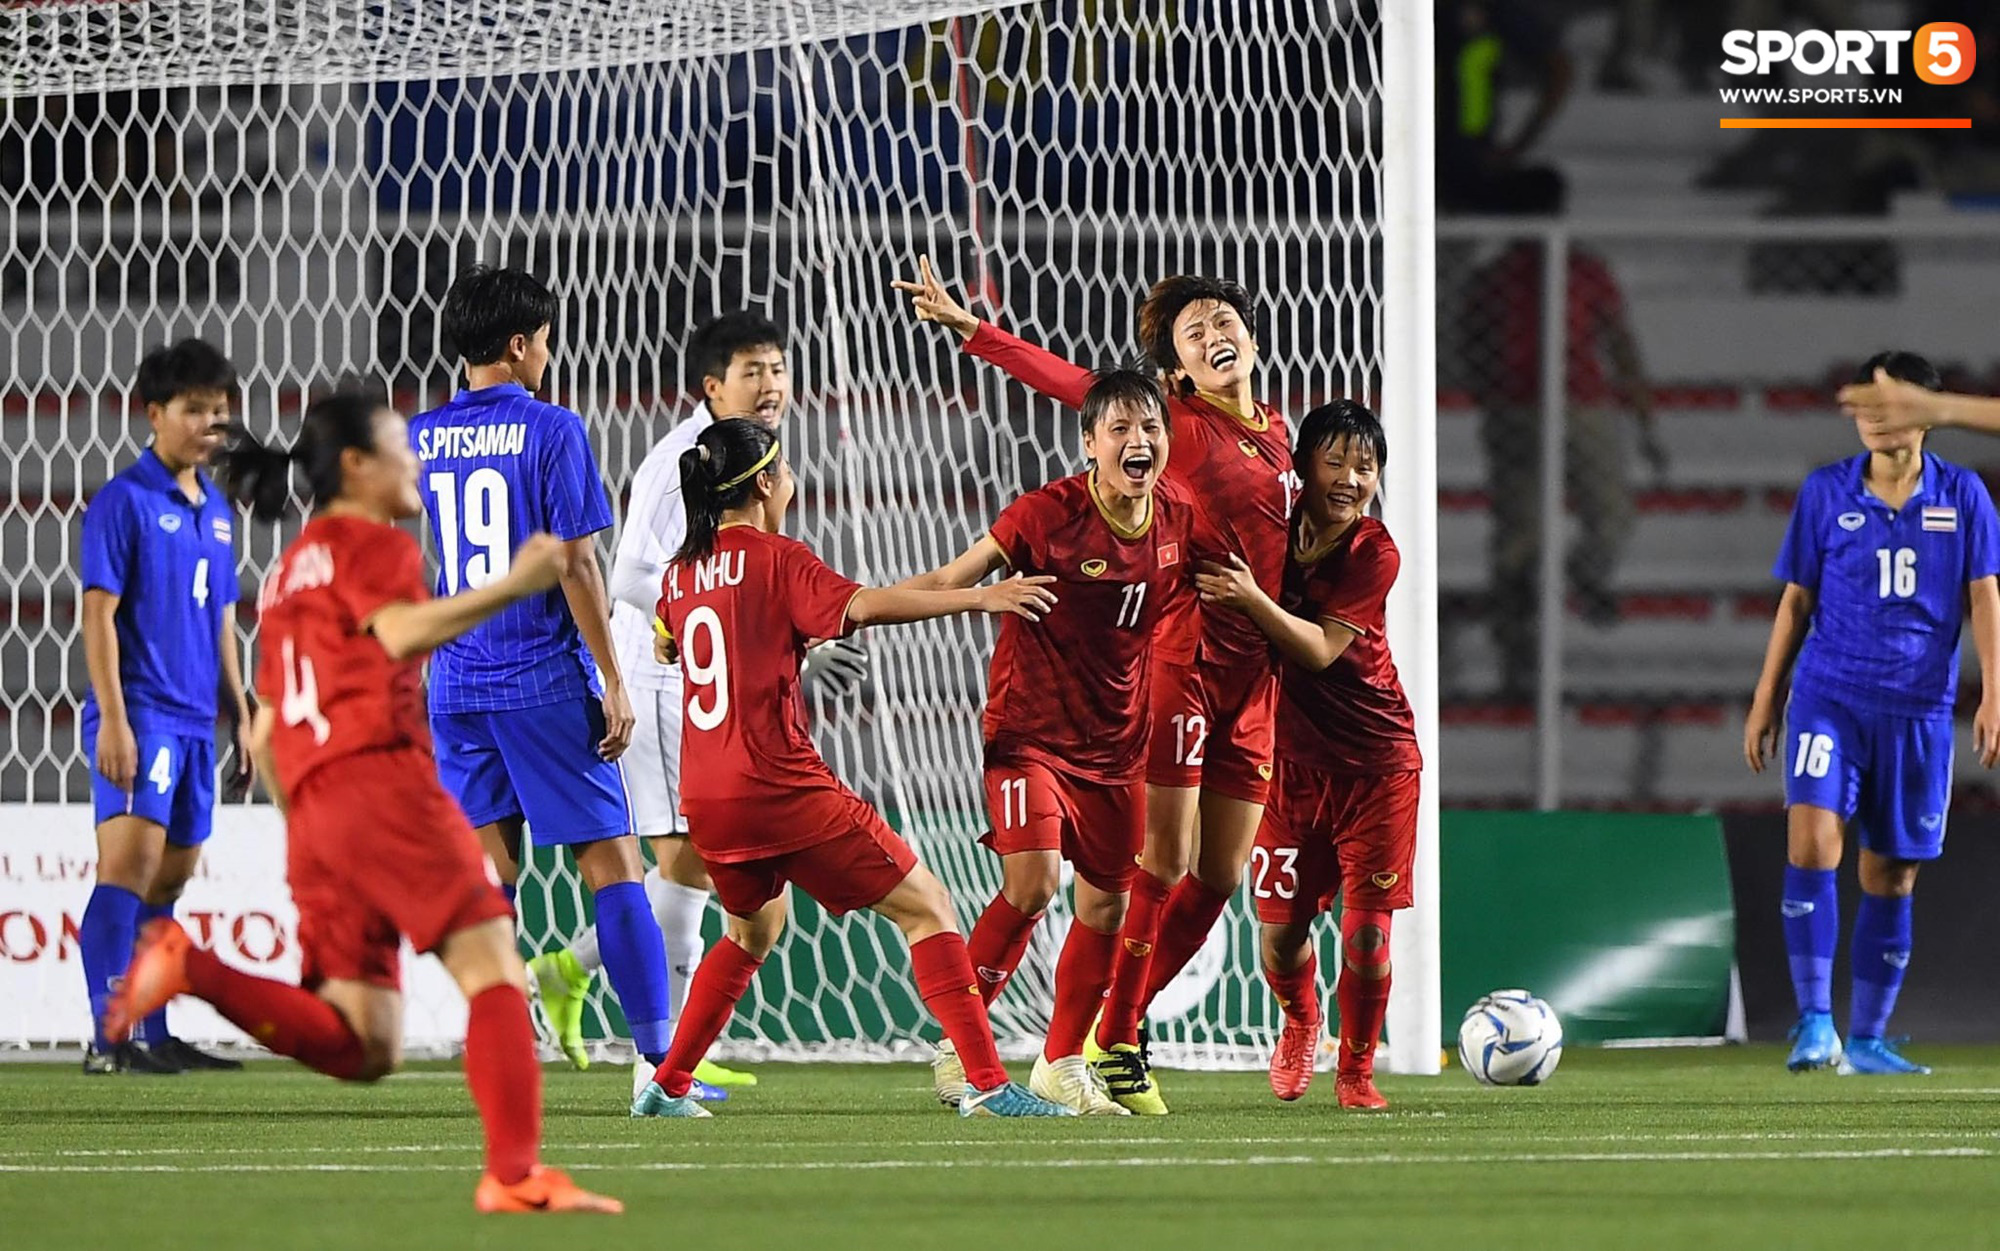 Em gái ngôi sao tuyển Thái Lan đánh đầu kiến tạo như Văn Hậu cho nữ cầu thủ Việt Nam đánh đầu tung lưới đội nhà - Ảnh 5.